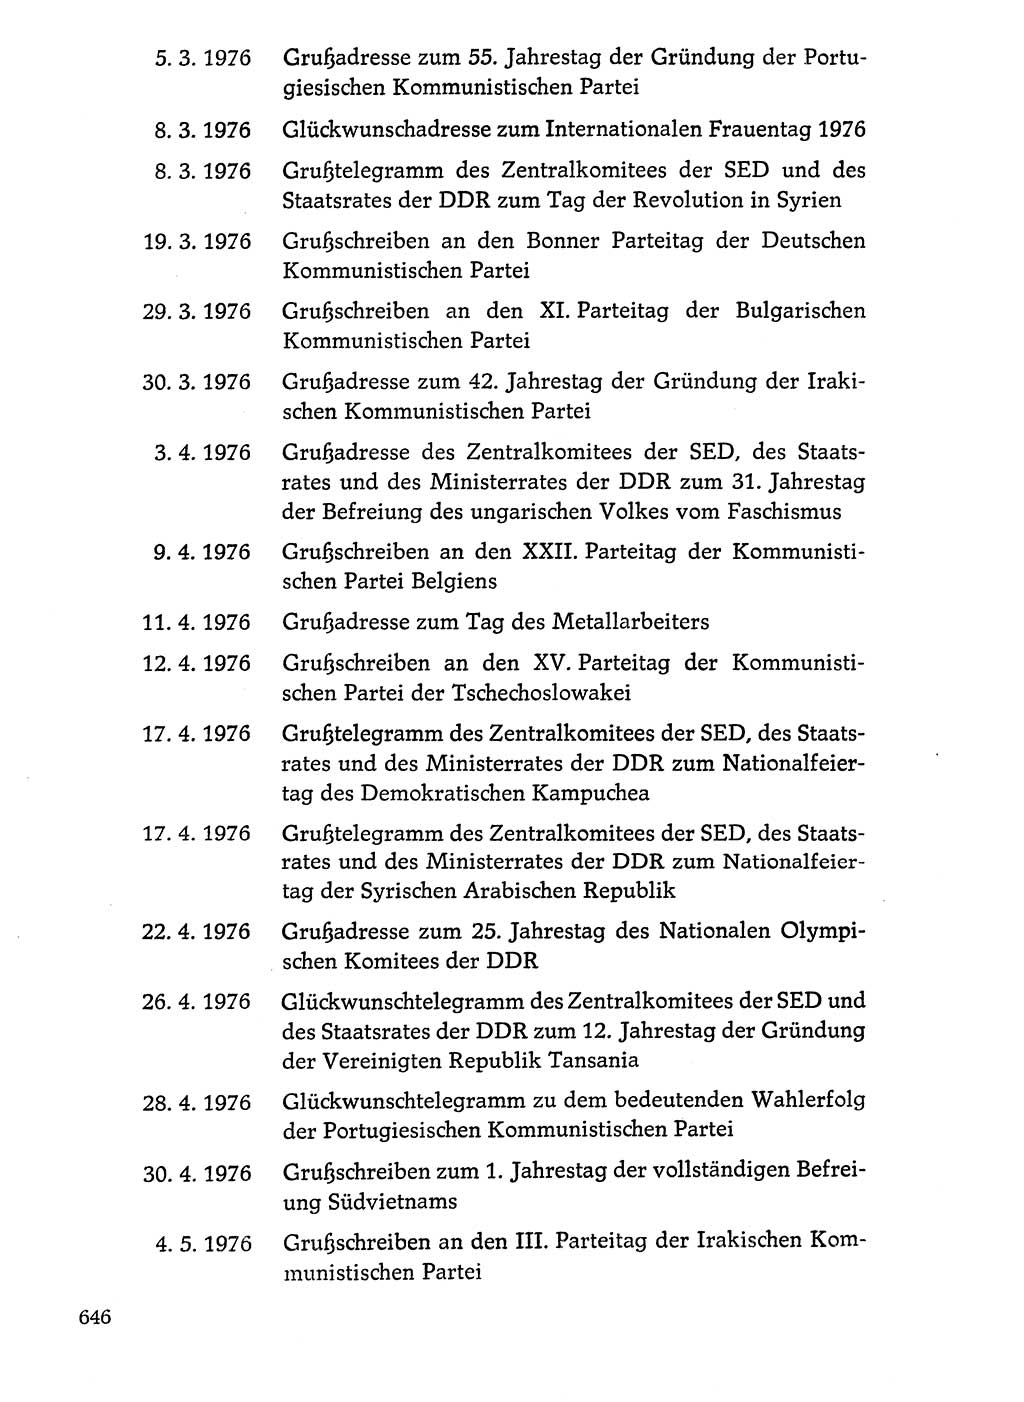 Dokumente der Sozialistischen Einheitspartei Deutschlands (SED) [Deutsche Demokratische Republik (DDR)] 1976-1977, Seite 646 (Dok. SED DDR 1976-1977, S. 646)